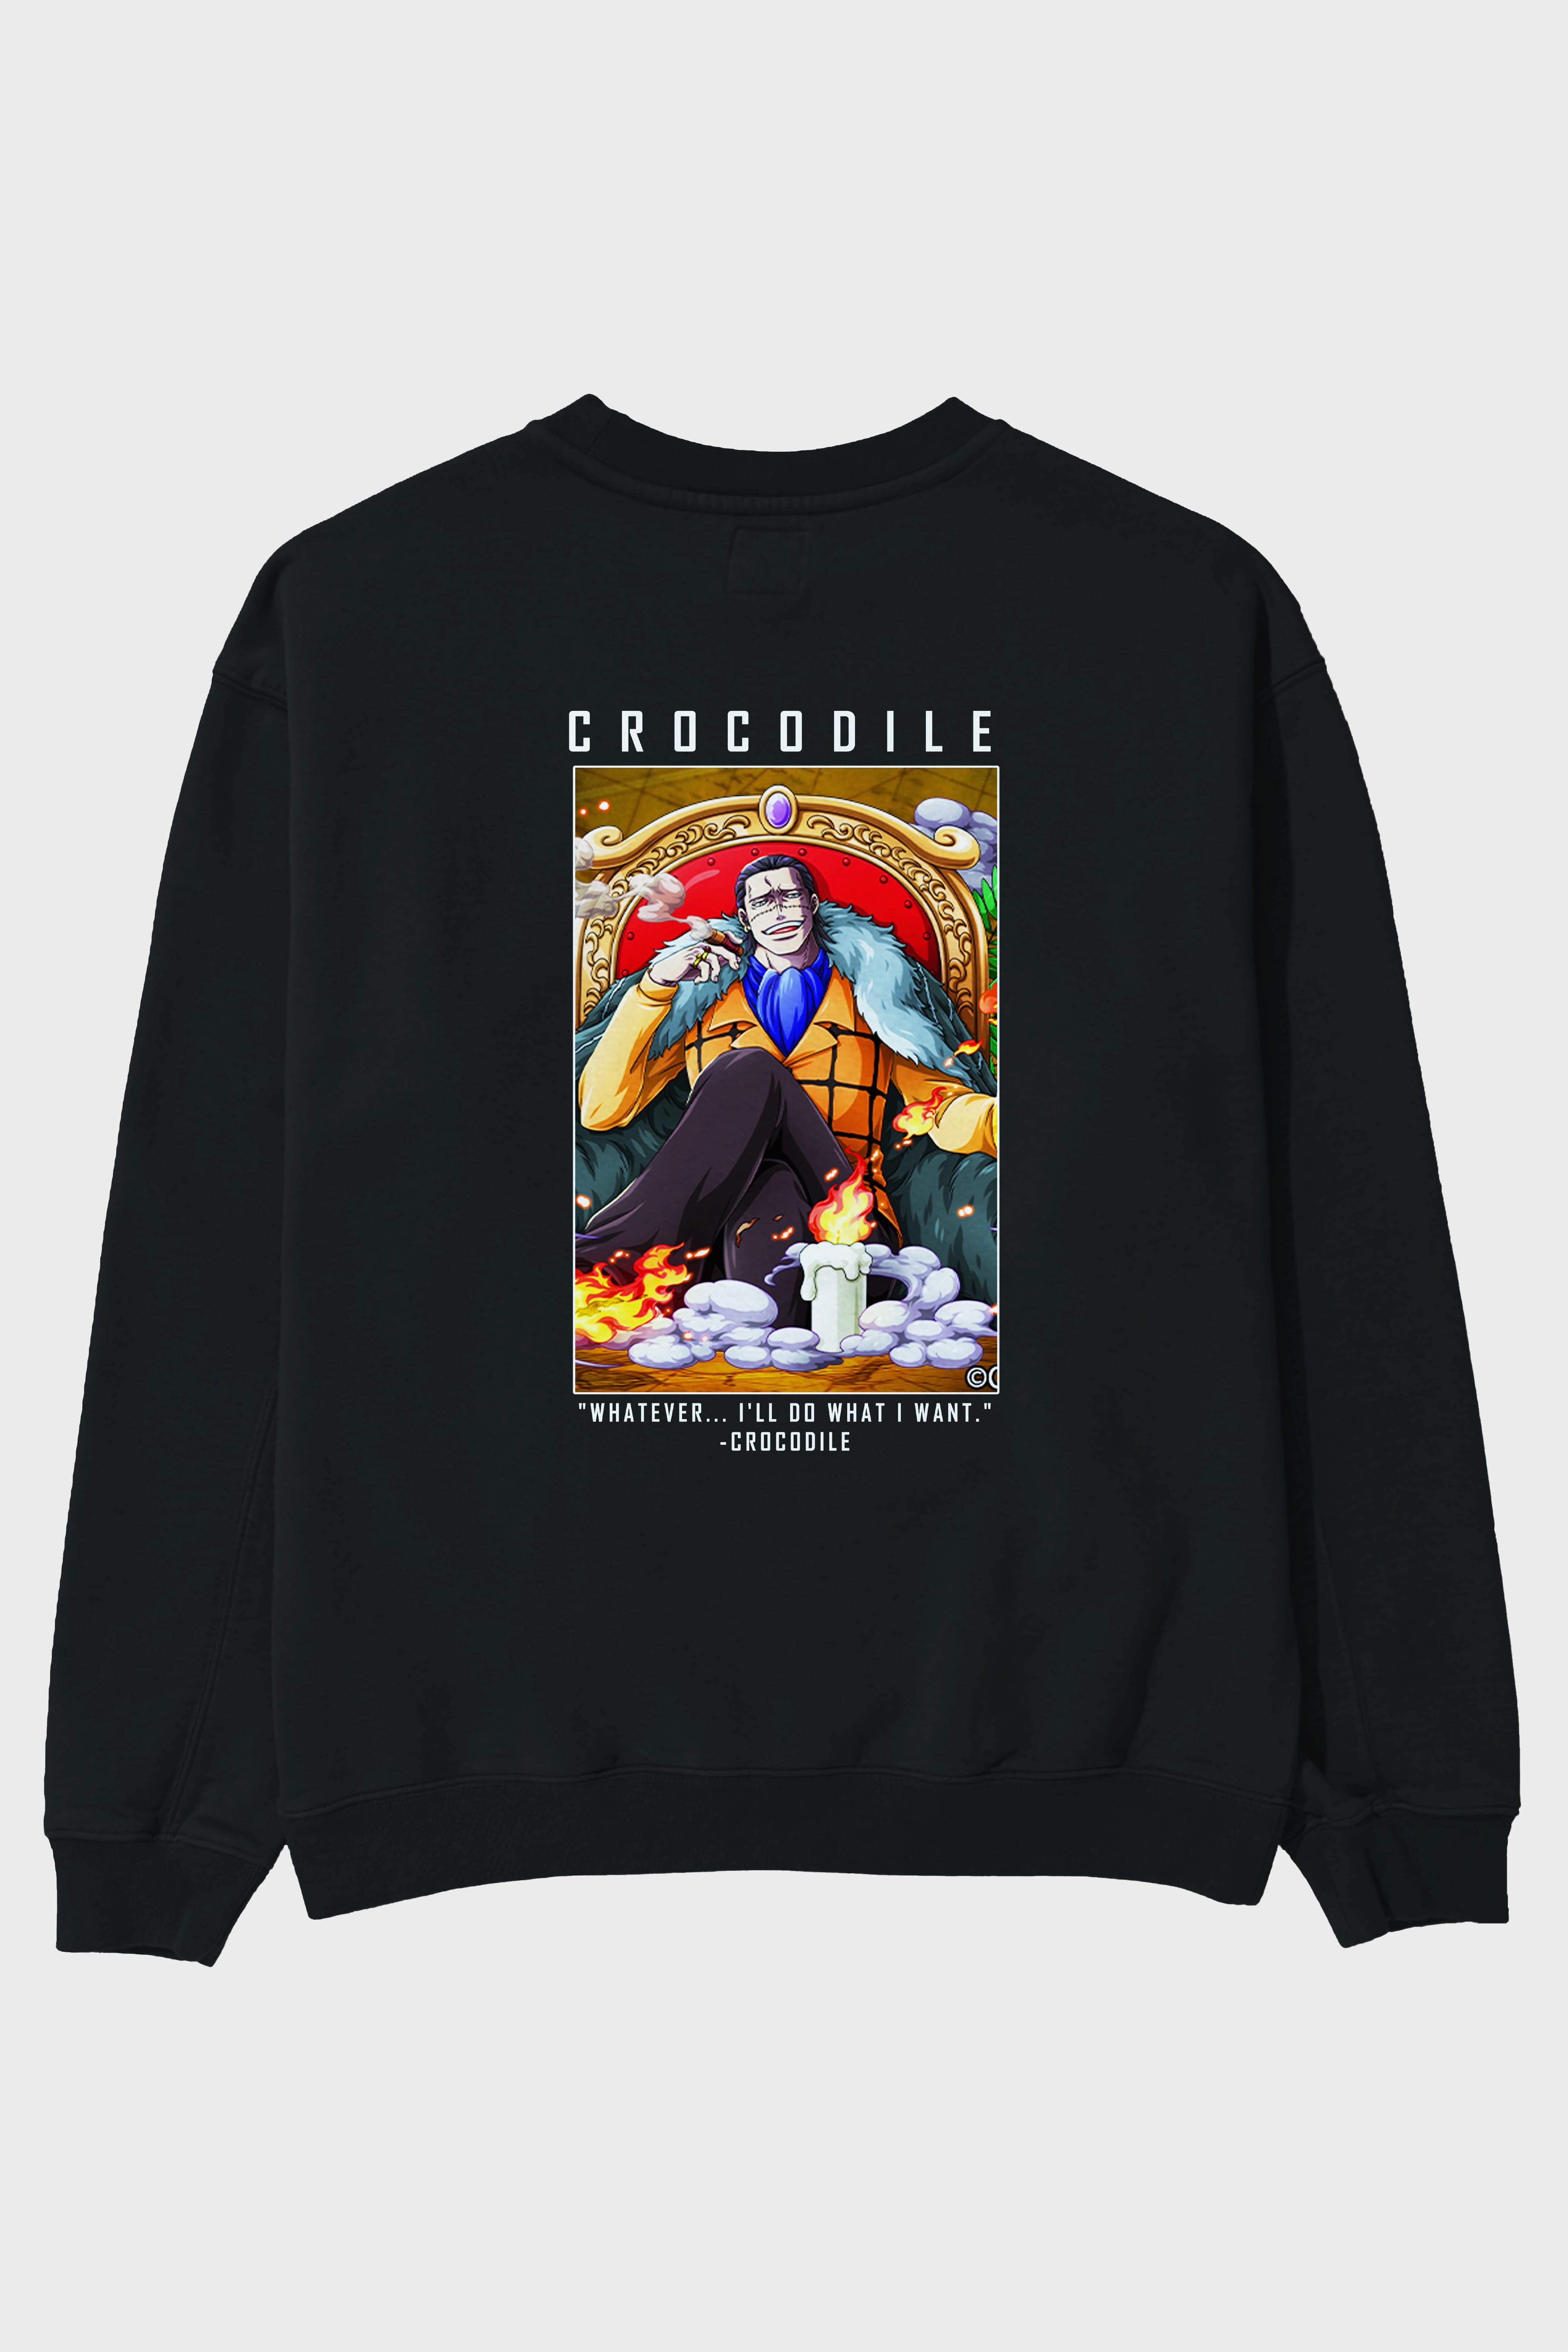 Crocodile Arka Baskılı Anime Oversize Sweatshirt Erkek Kadın Unisex